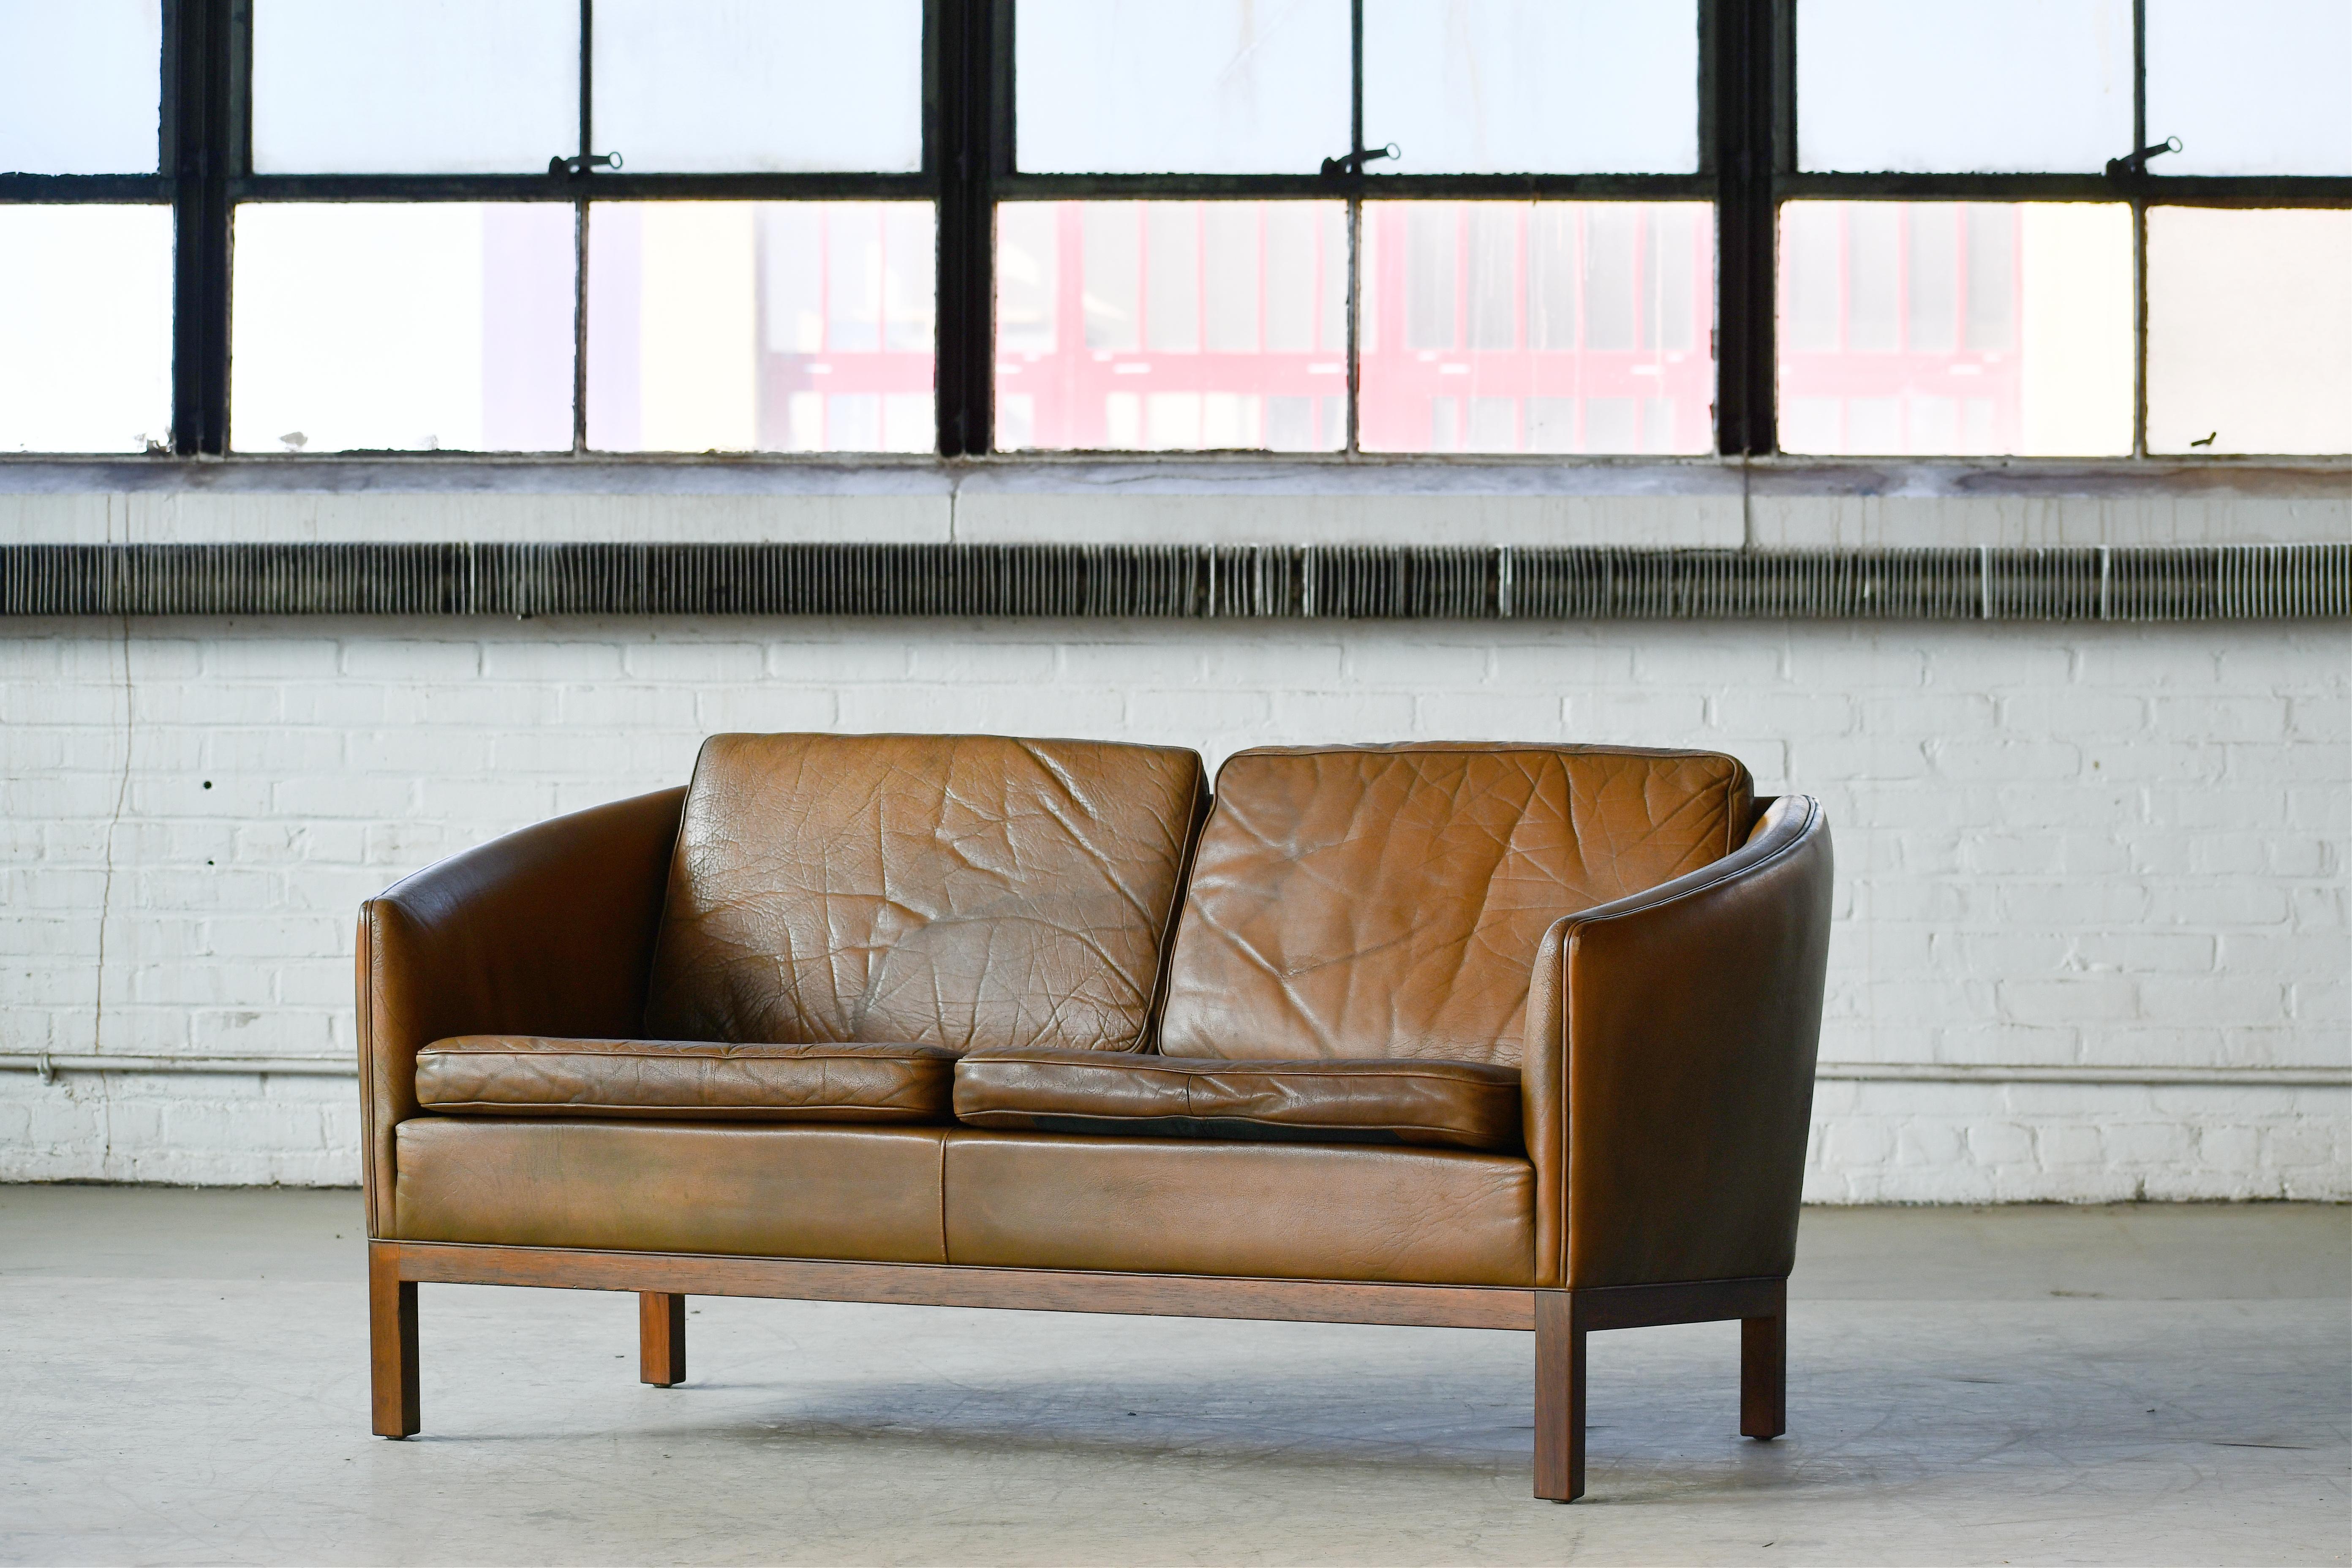 Klassisches dänisches Sofa von Illum Wikkelso in hellbraunem Büffelleder. Das Sofa steht auf einem Sockel aus Palisanderholz, der ihm Reichtum und Eleganz verleiht.  Der perfekte entspannte Look der 1960er Jahre wurde wahrscheinlich Ende der 1960er